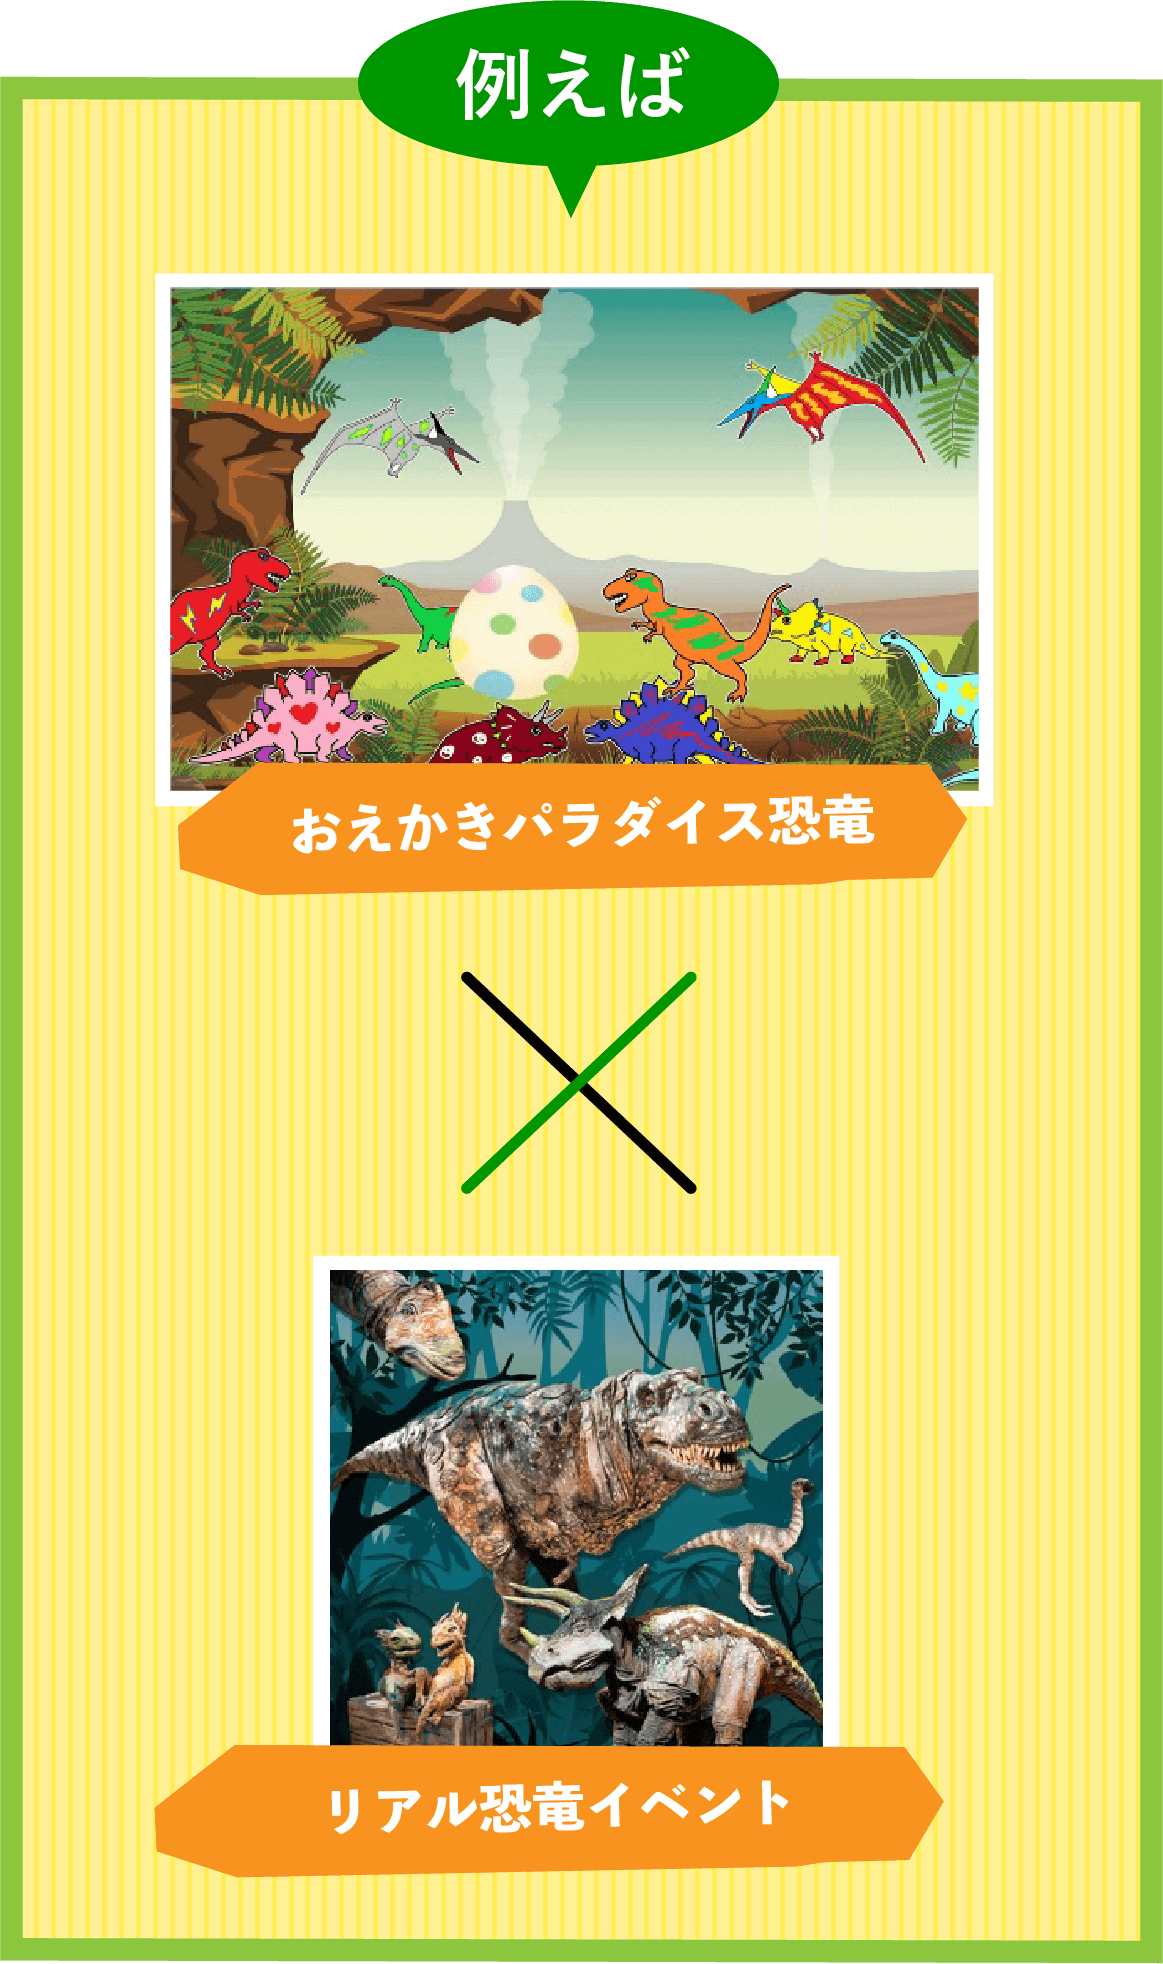 おえかきパラダイス恐竜×リアル恐竜イベント